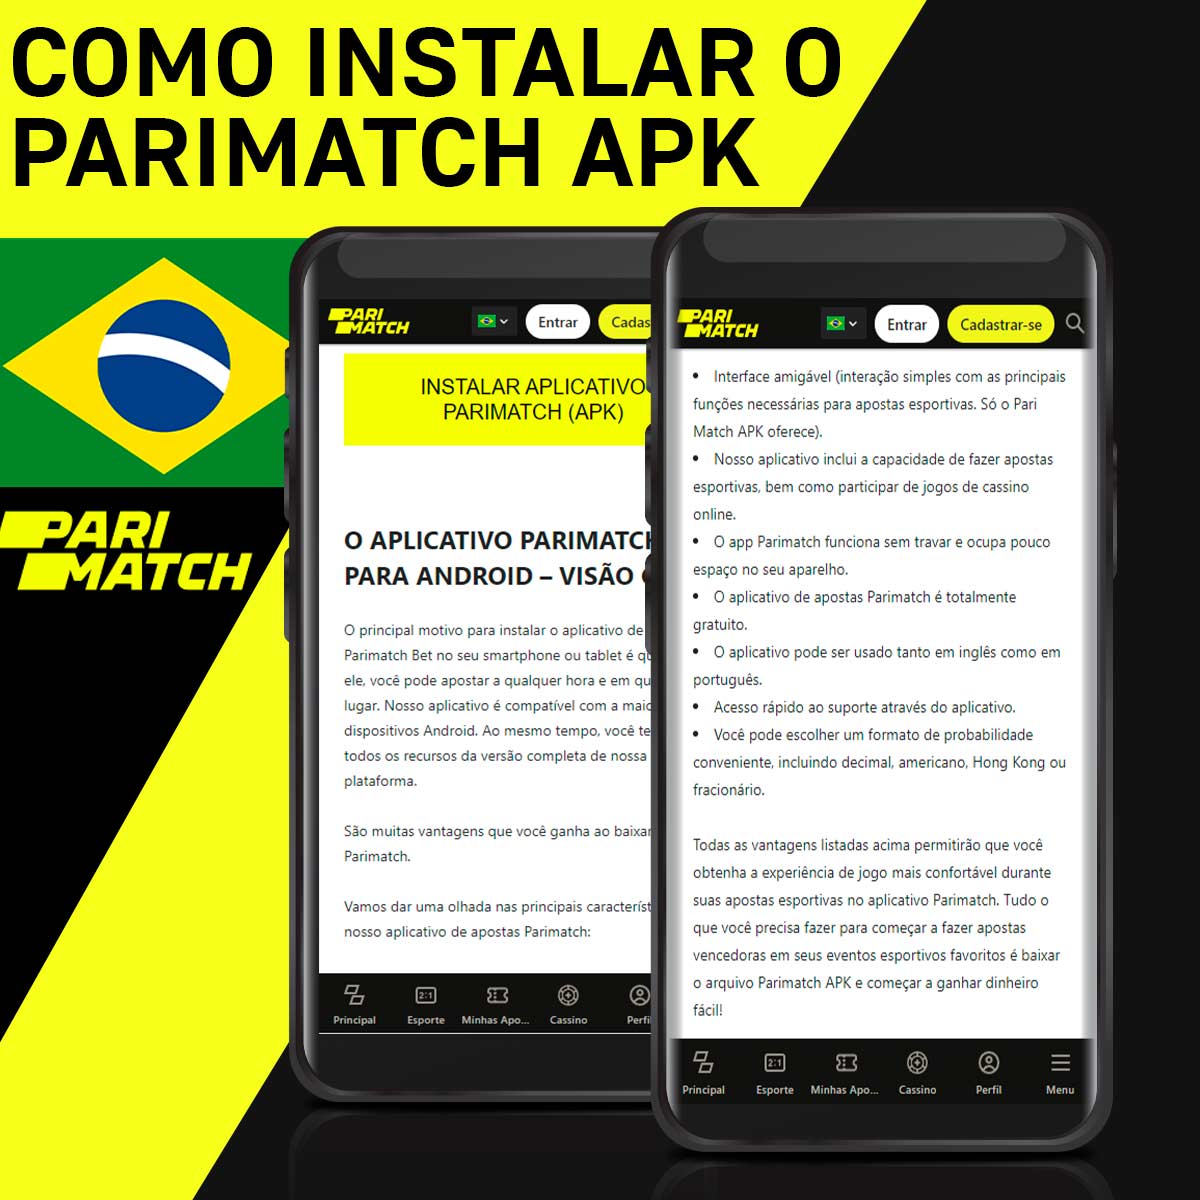 Instruções sobre como instalar o aplicativo Parimatch em seu telefone celularInstruções sobre como instalar o aplicativo Parimatch em seu telefone celular